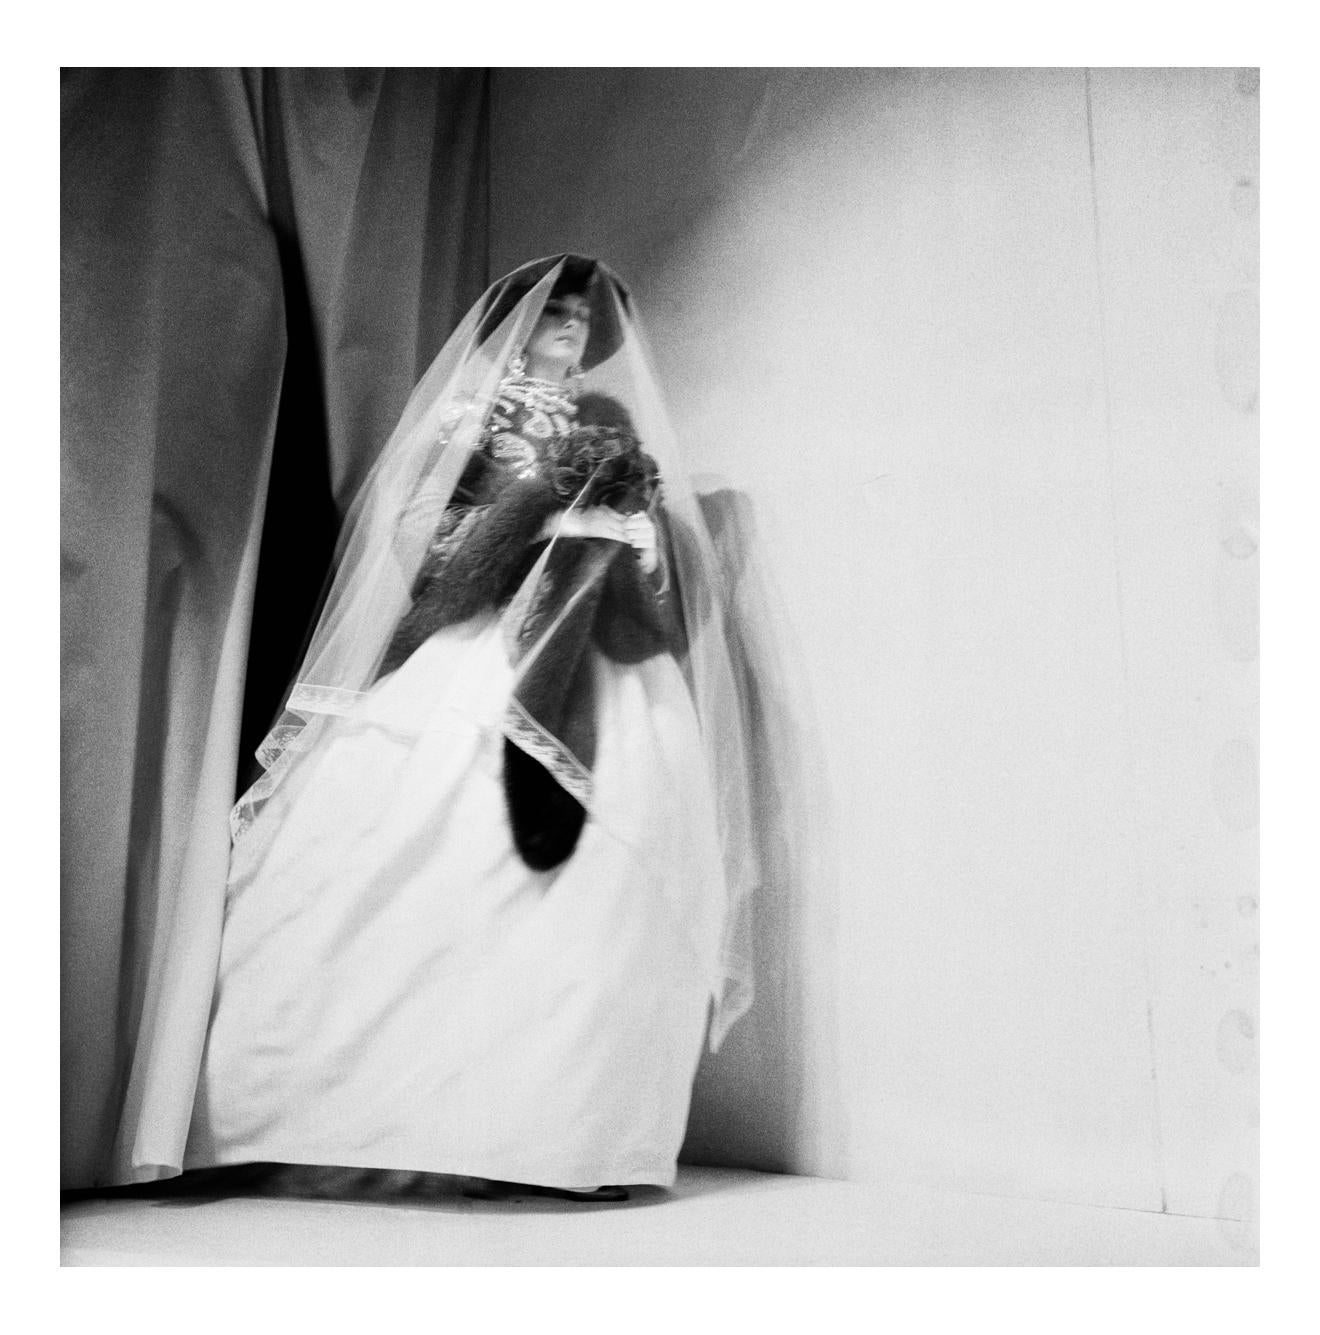 Jonathan Becker Abstract Photograph - Oscar de la Renta Bride, New York, April 1982